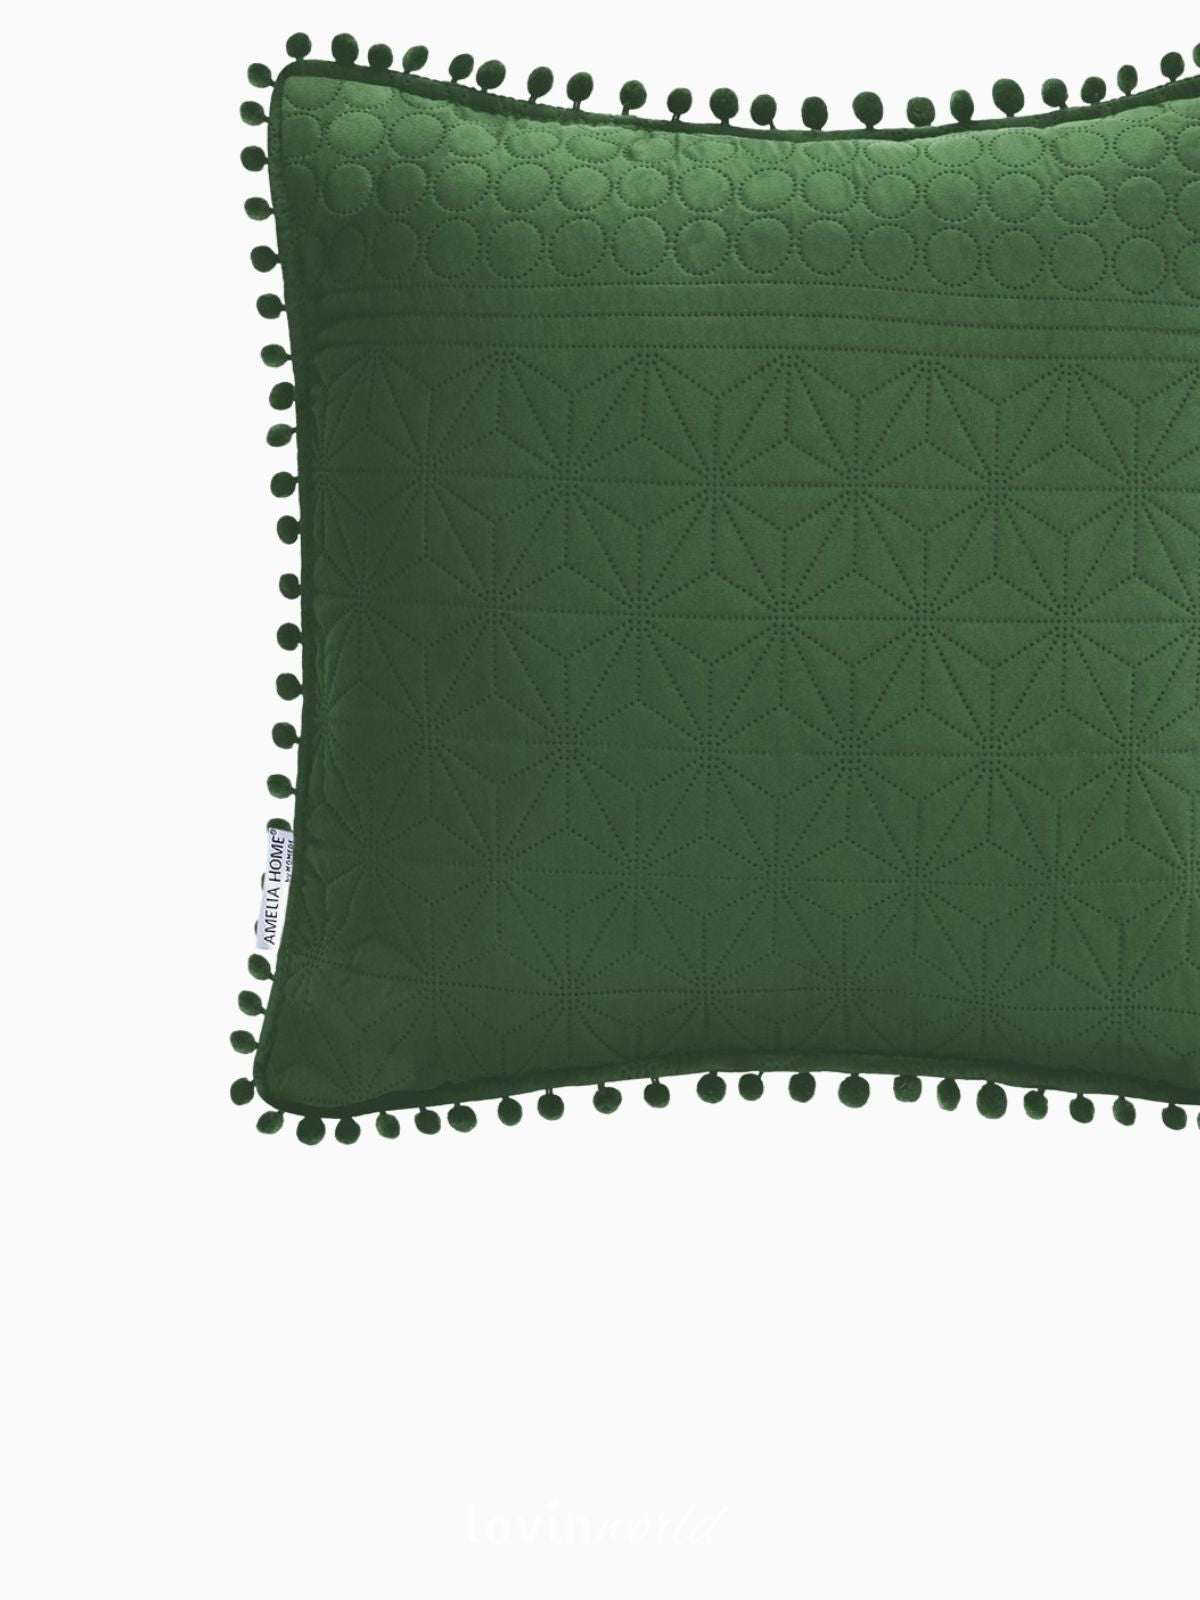 Cuscino decorativo Meadore in colore verde 45x45 cm.-4